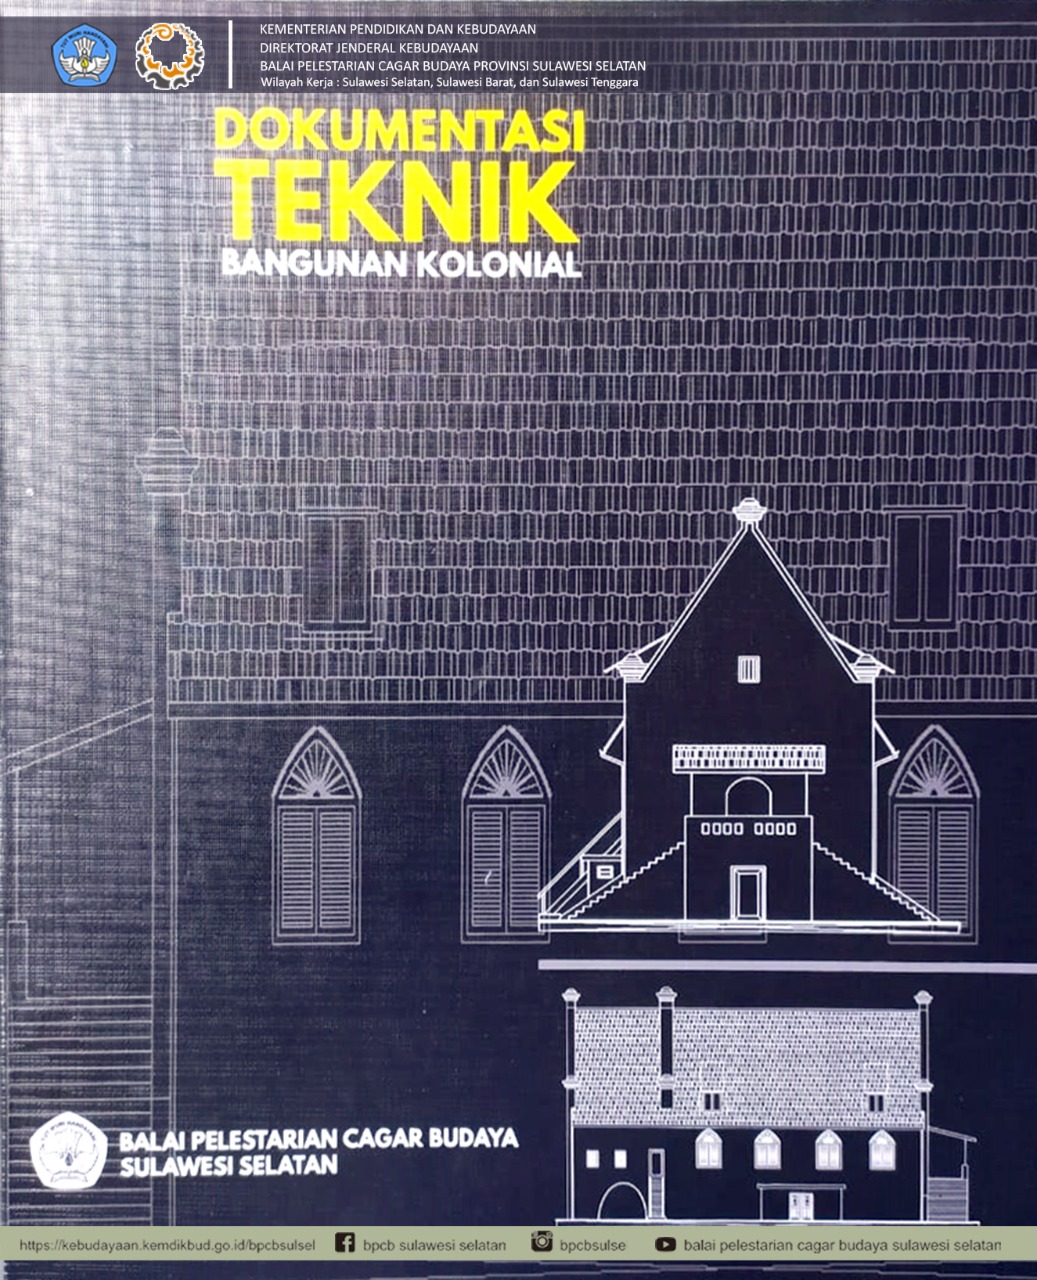 You are currently viewing Dokumentasi Teknik Bangunan Kolonial